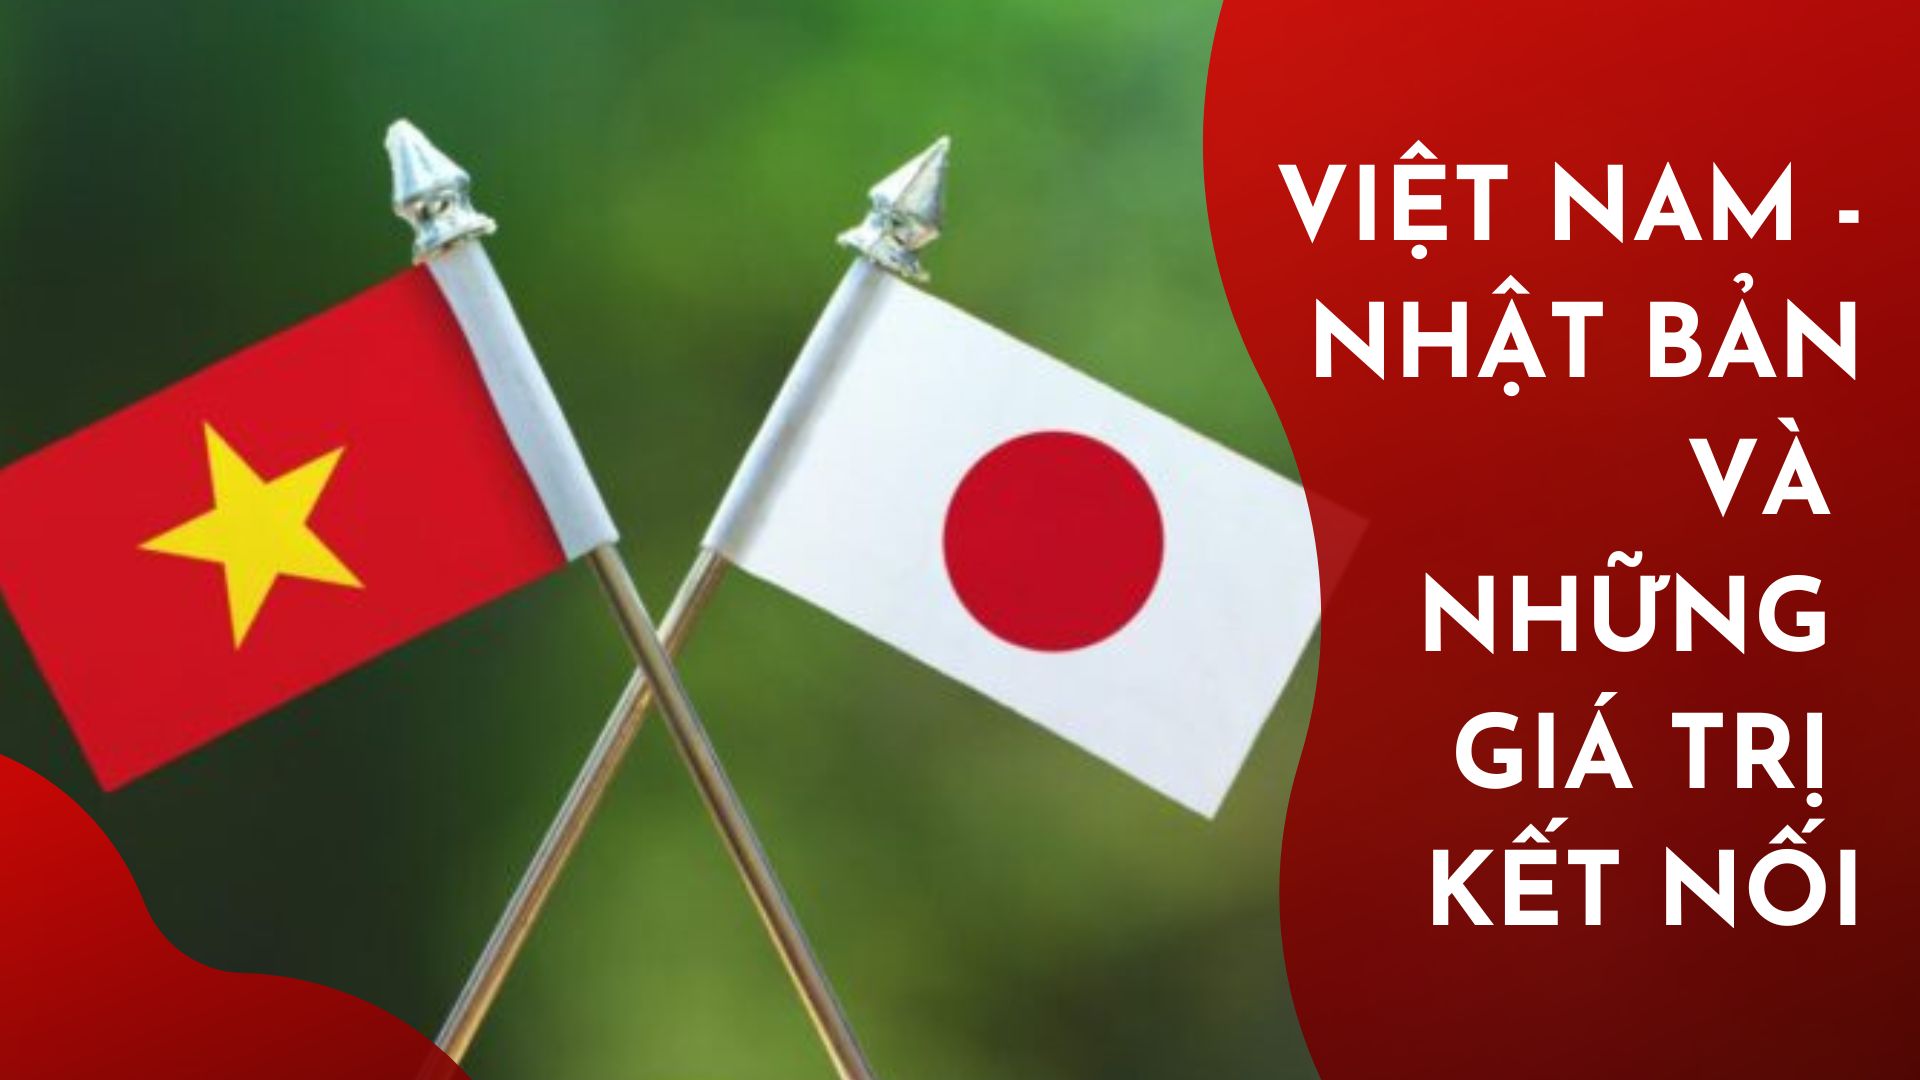 Việt Nam - Nhật Bản và những giá trị kết nối